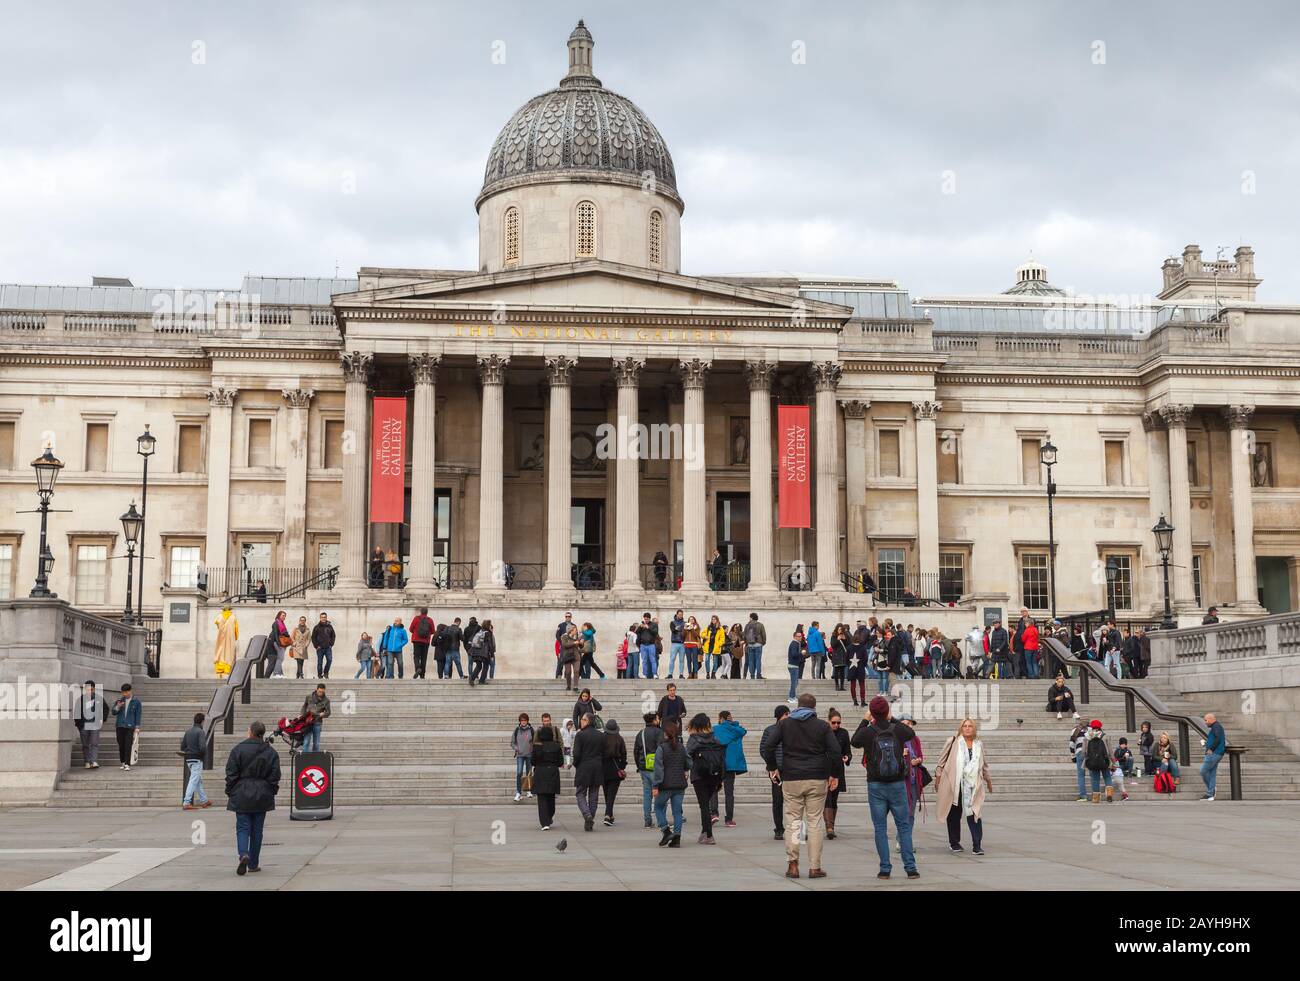 Londres, Royaume-Uni - 29 octobre 2017: Trafalgar Square, les touristes marchent près de la National Gallery Banque D'Images